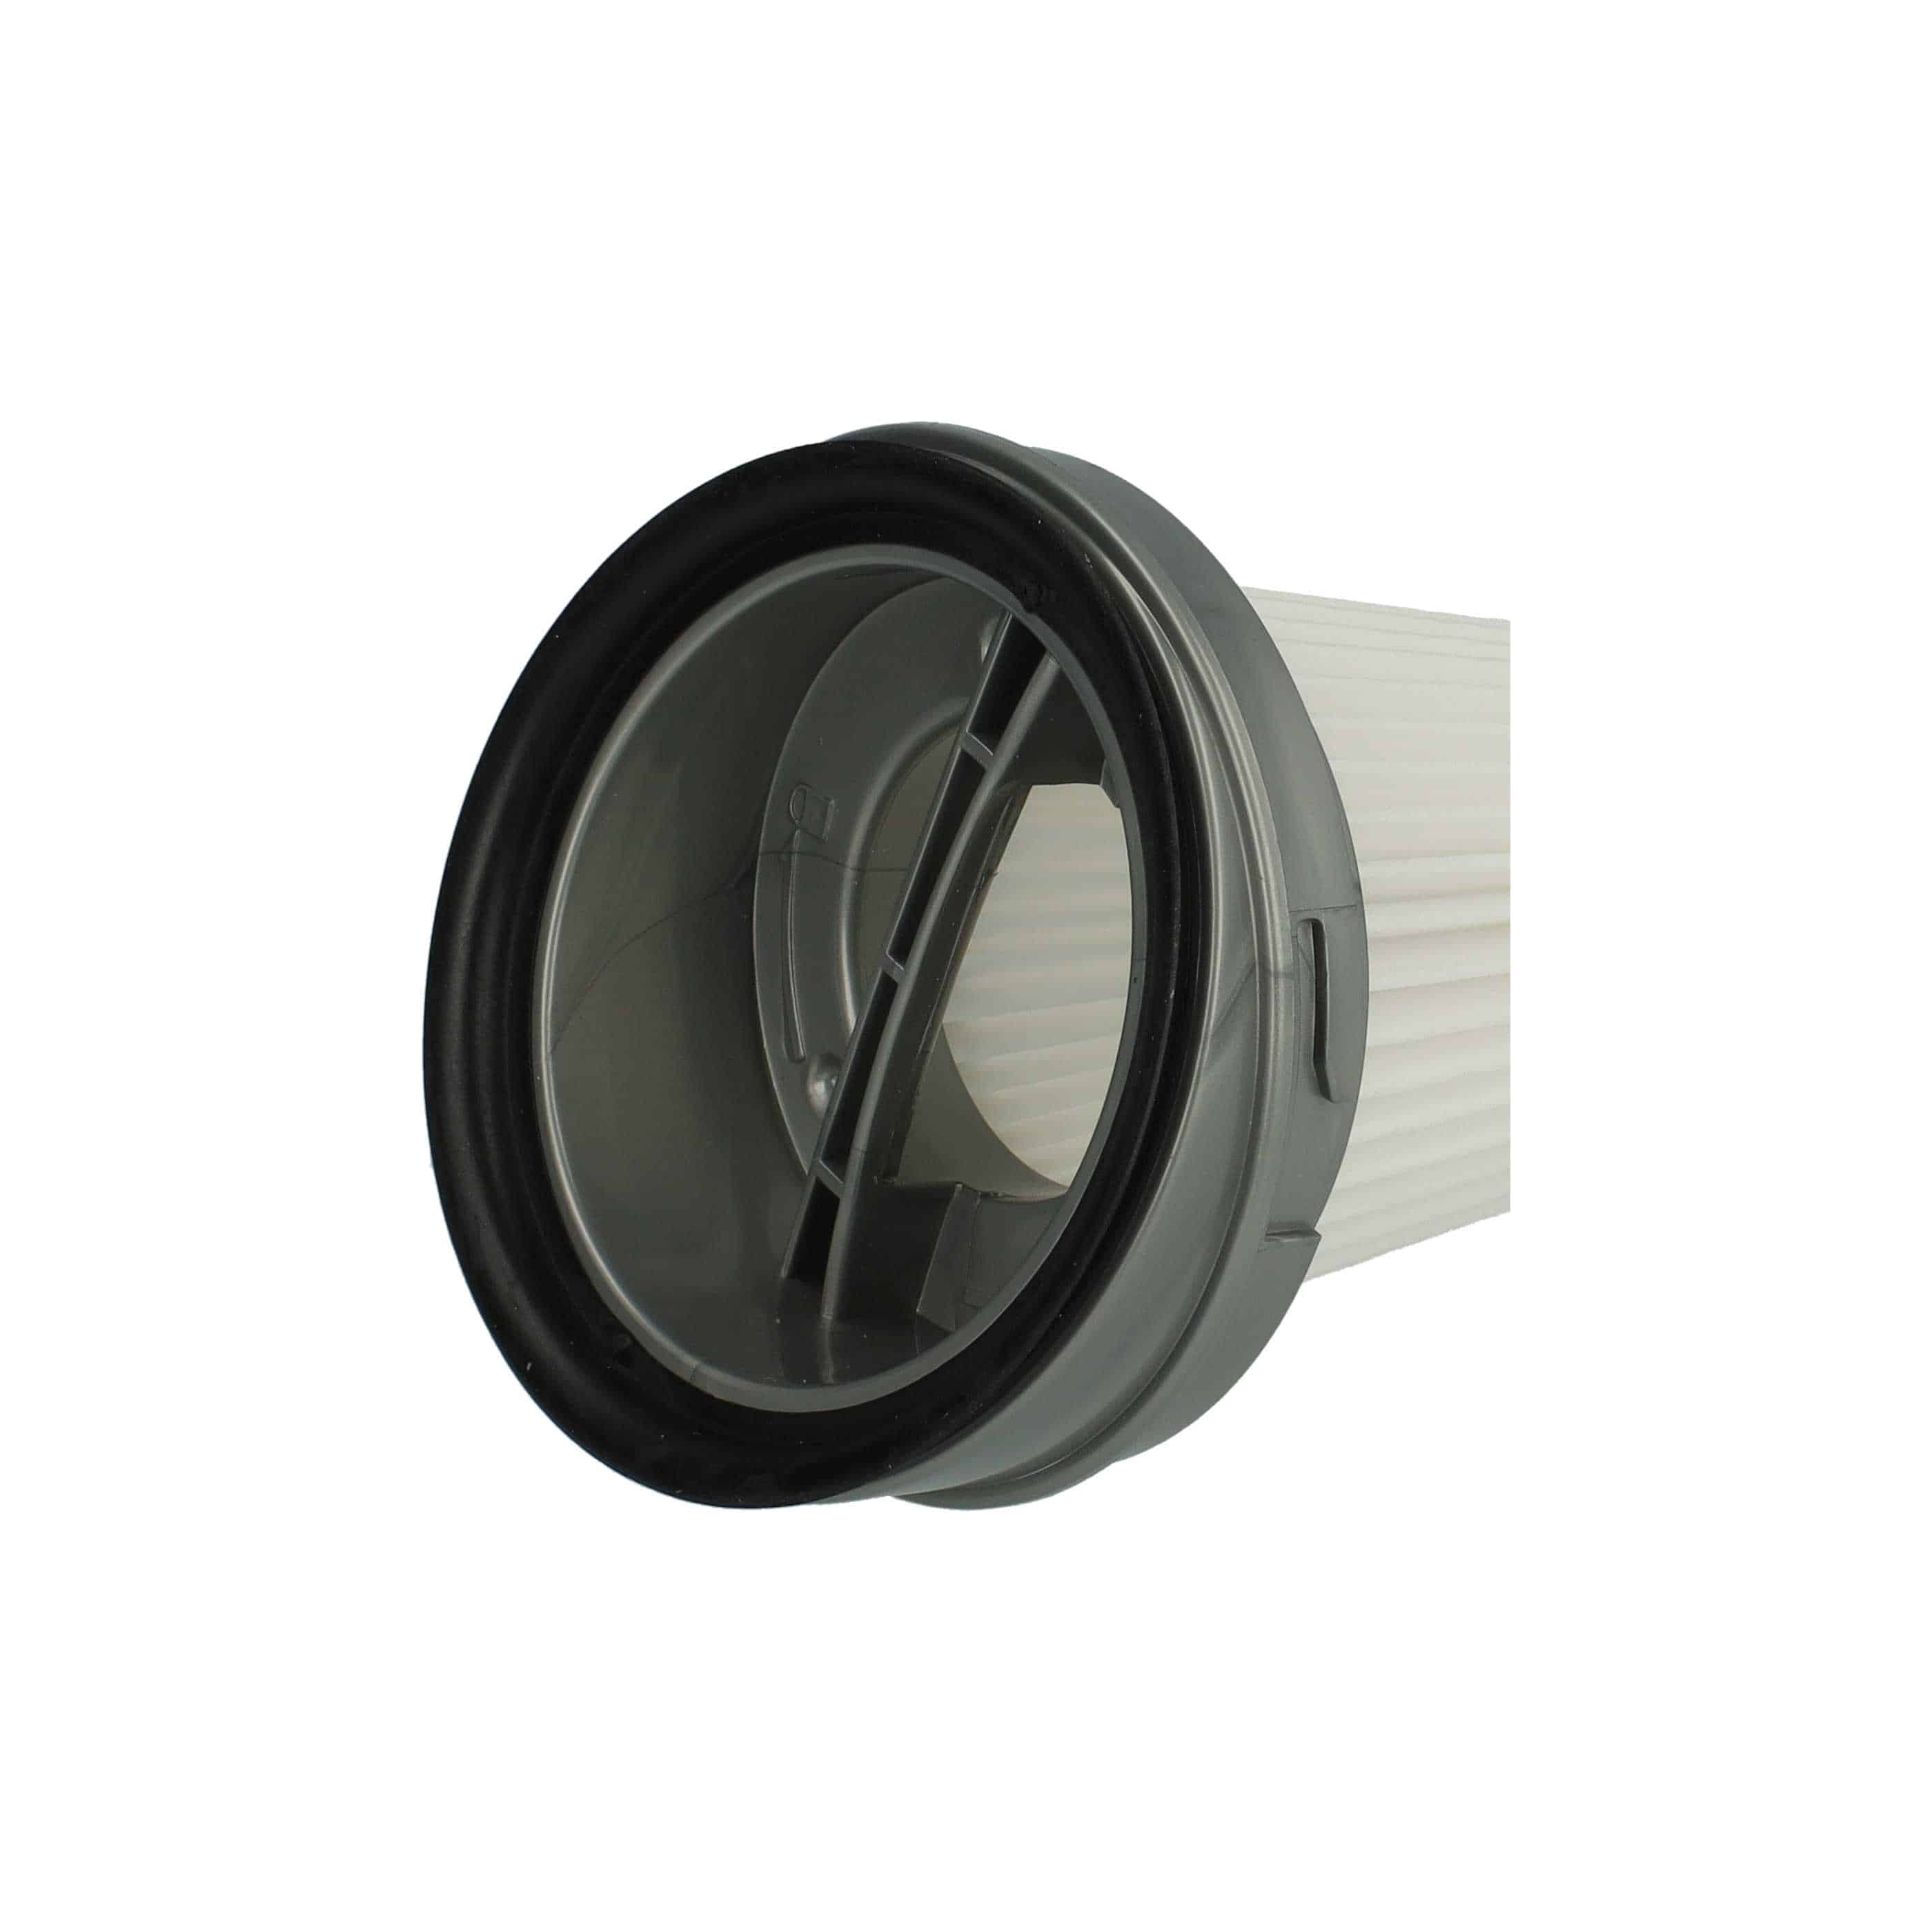 Filtro sostituisce Black & Decker 1004708-73 per aspirapolvere - filtro a pieghe, nero / bianco / grigio